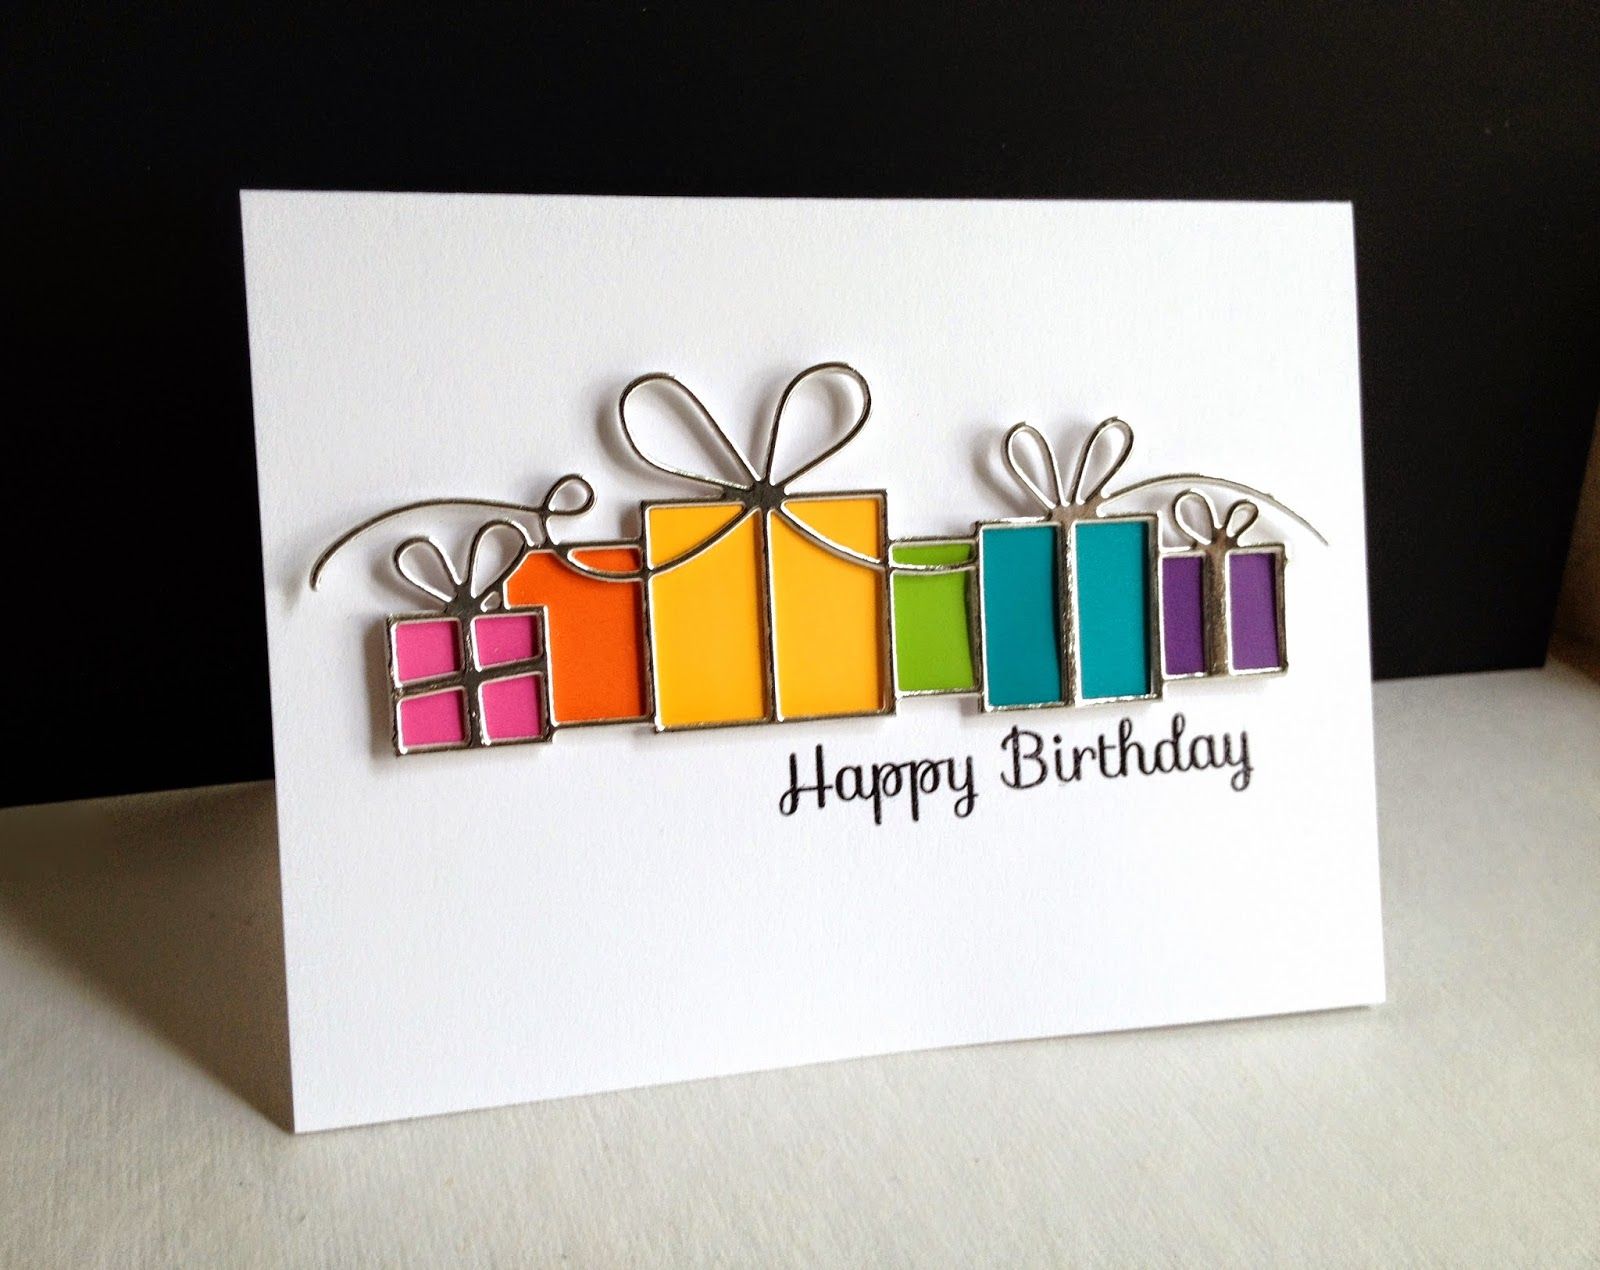 Pin by R&R on birthday card ideas | Pinterest | Card ideas, Cards ...